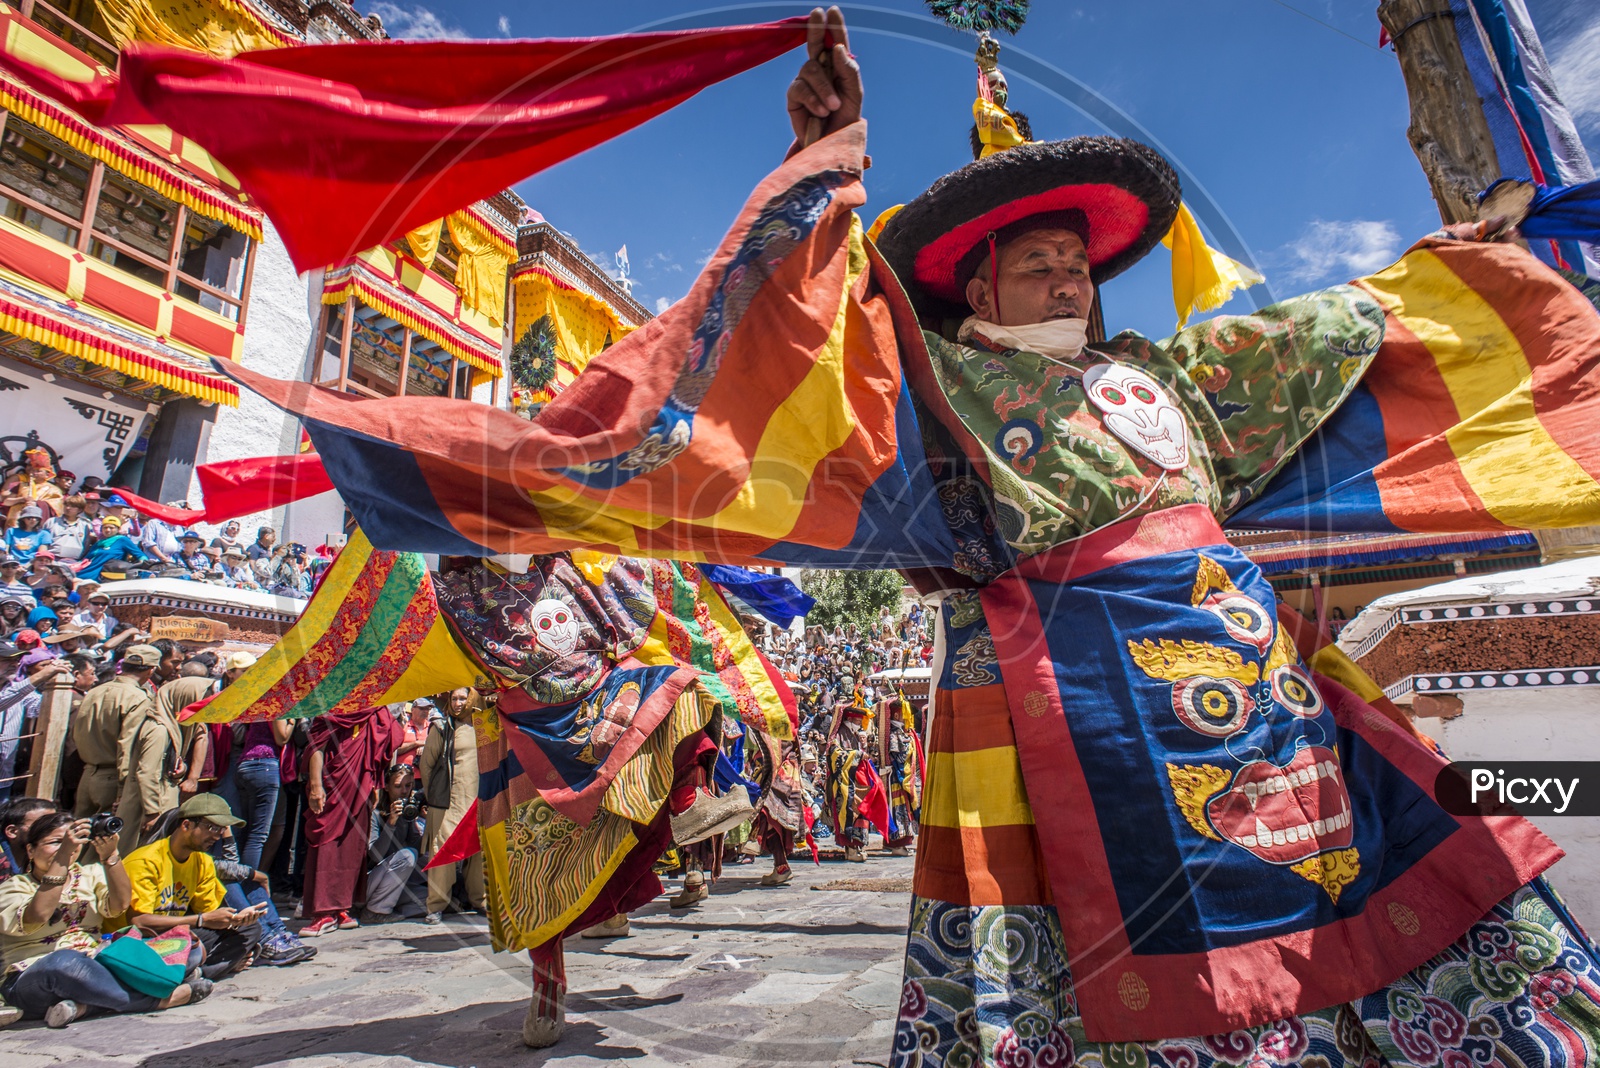 Hemis Festival, Ladakh